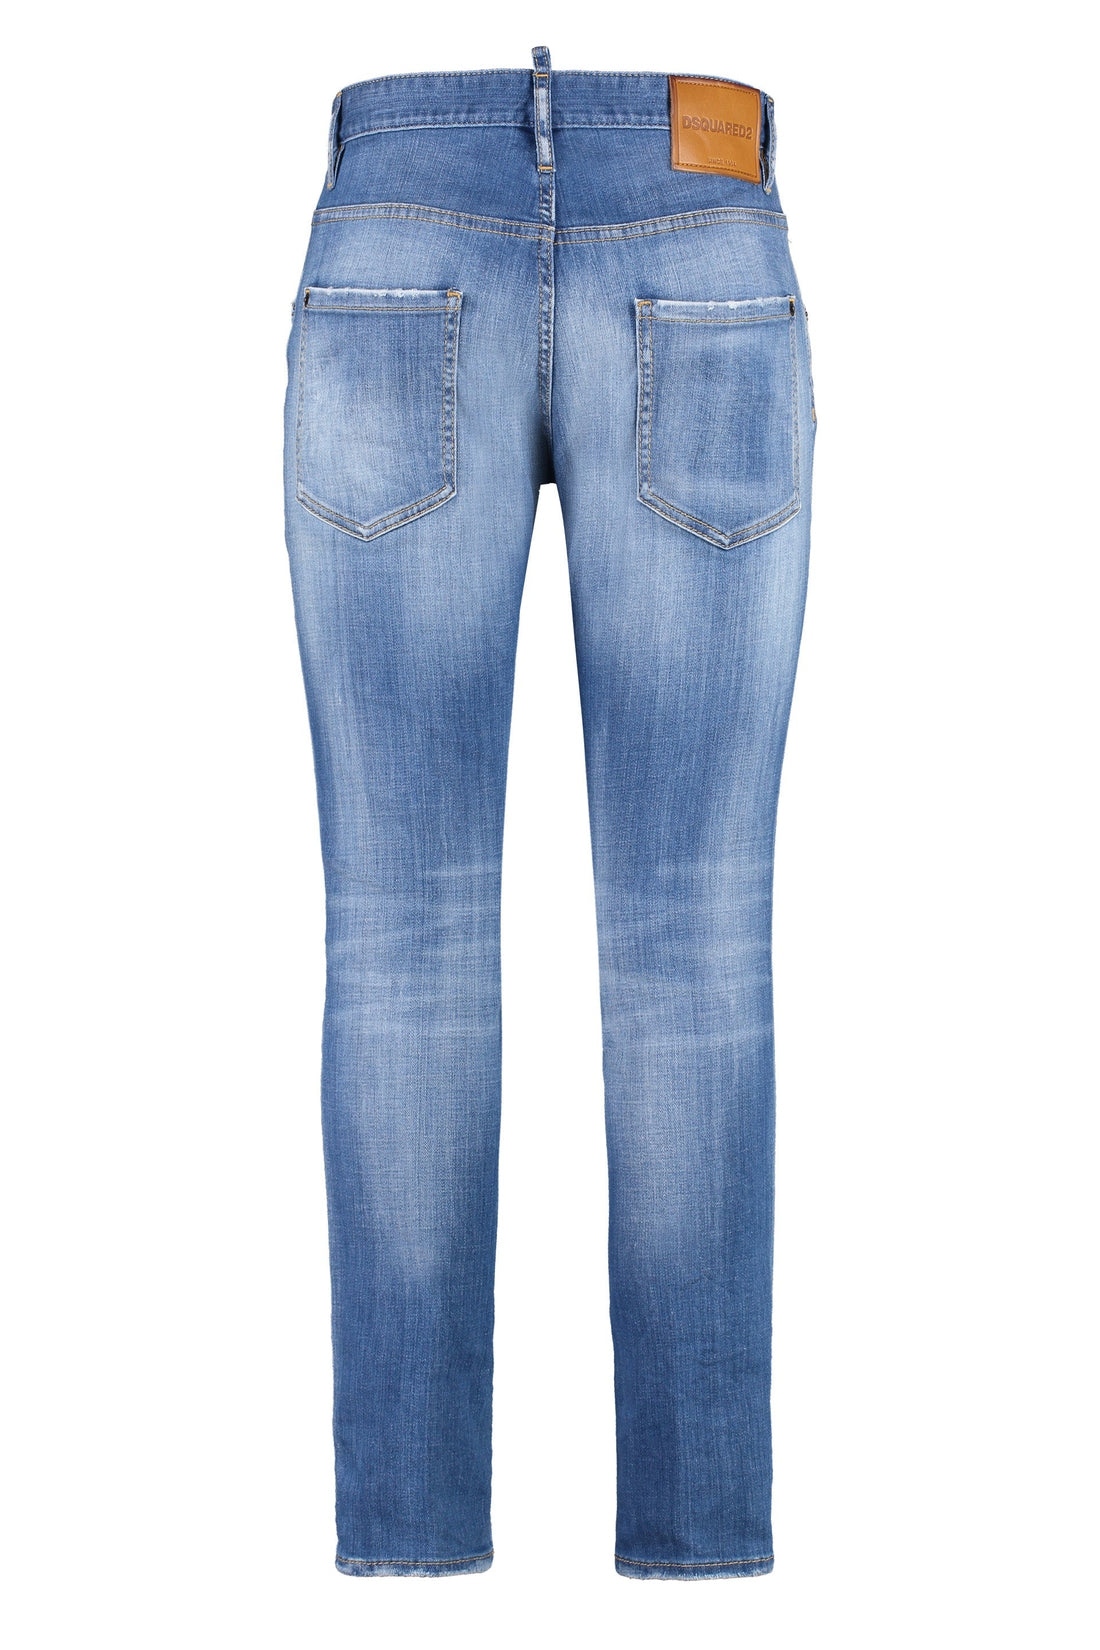 Dsquared2-OUTLET-SALE-Skater skinny jeans-ARCHIVIST